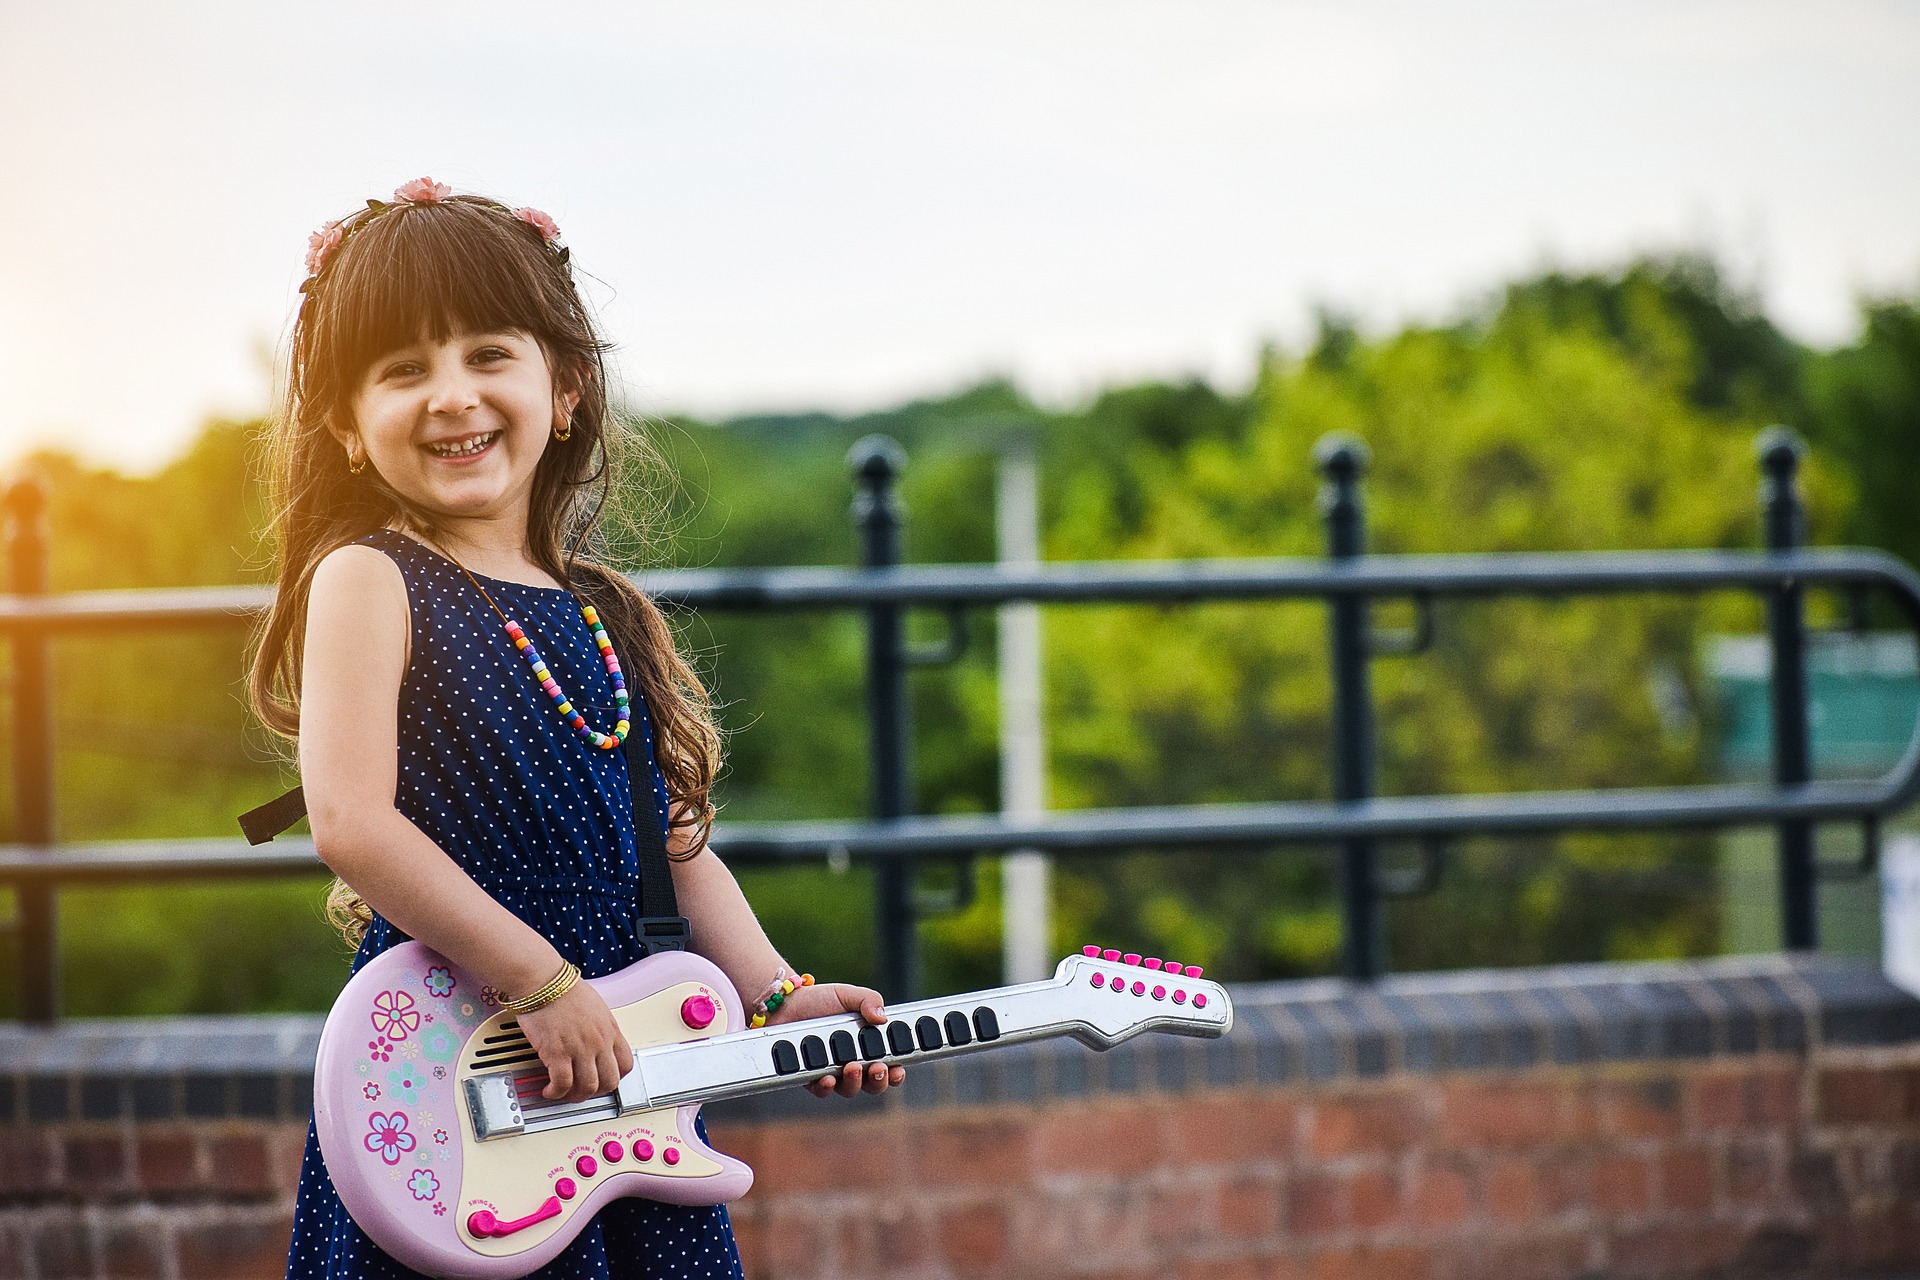 Ein glücklich lächelndes Mädchen steht mit einer rosanen Spielzeuggitarre vor einem Geländer. Im Hintergrund sind Bäume zu sehen. Das Mädchen hat lange Haare, trägt einen Blumenkranz im Haar und eine Kette aus Holzperlen um den Hals. Sie trägt ein dunkelblaues Kleid mit weißen Pünktchen.